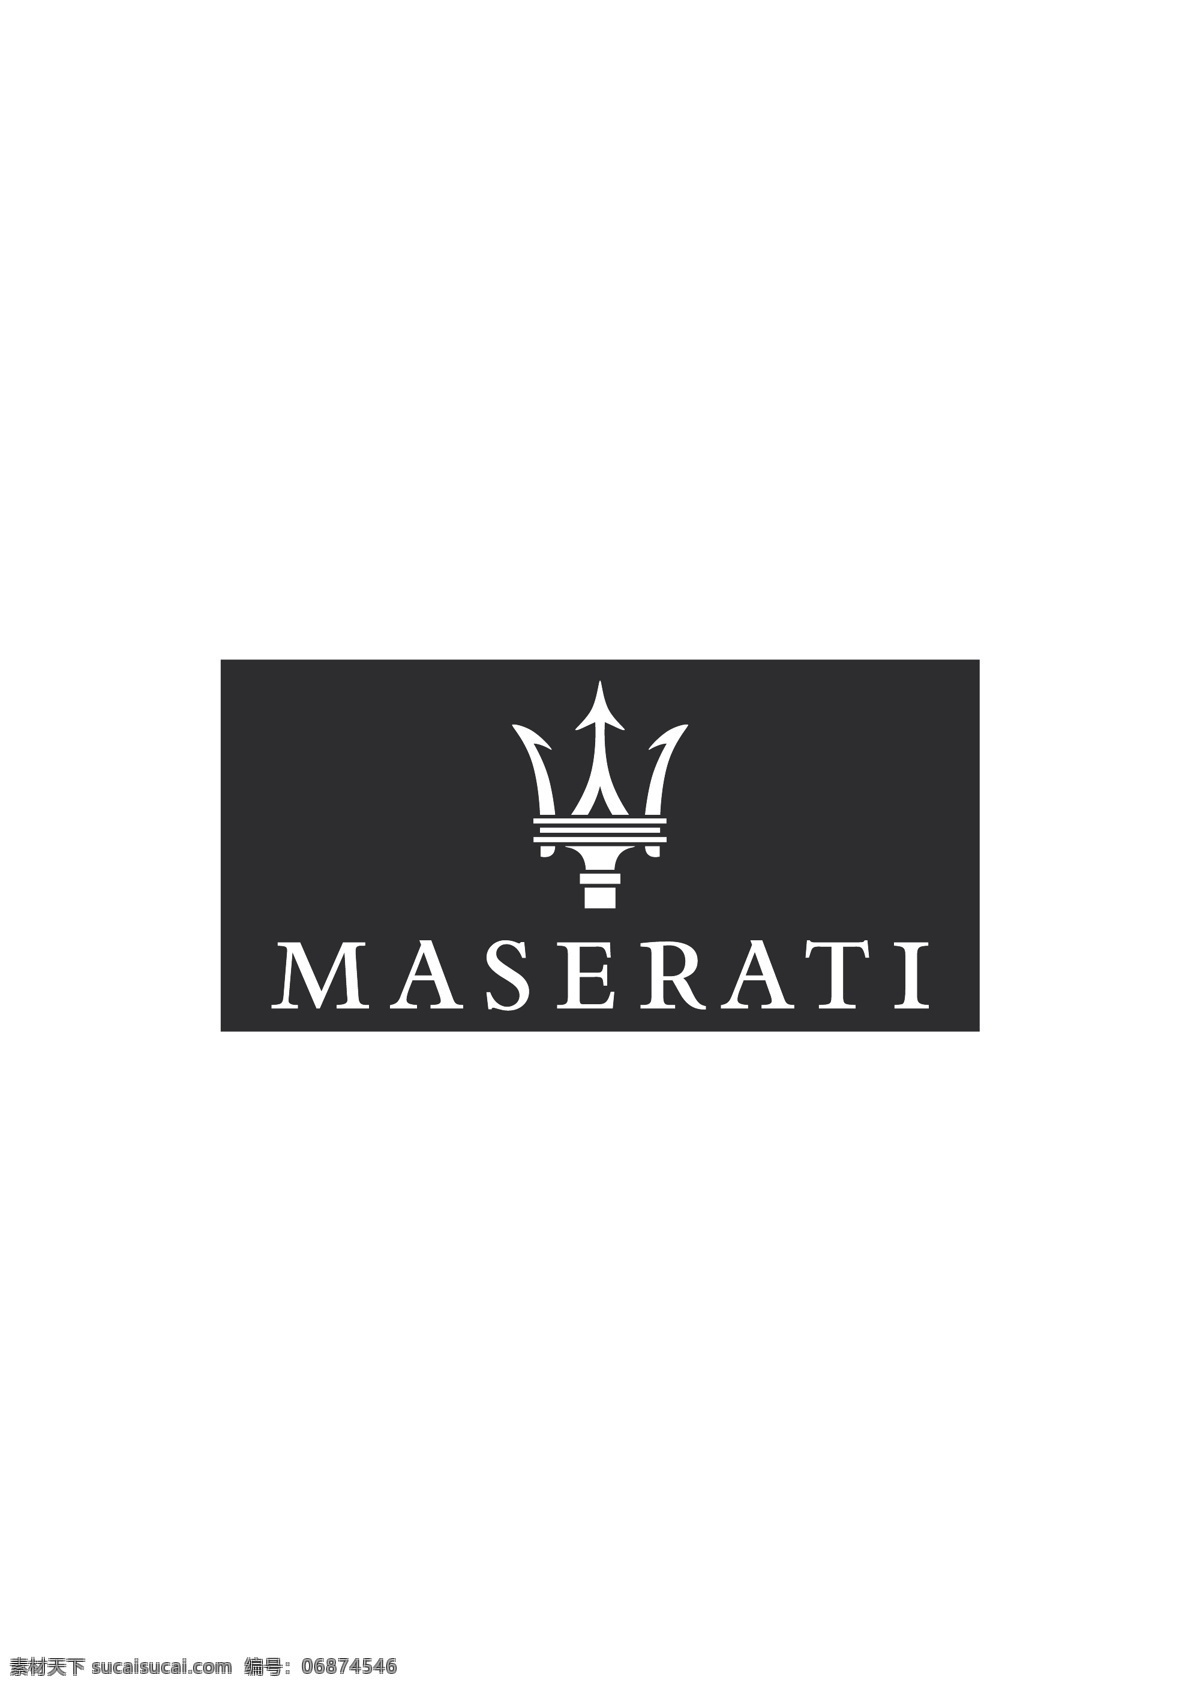 maserati 玛莎 拉蒂 玛莎拉蒂 logo 汽车 商标 标志图标 企业 标志